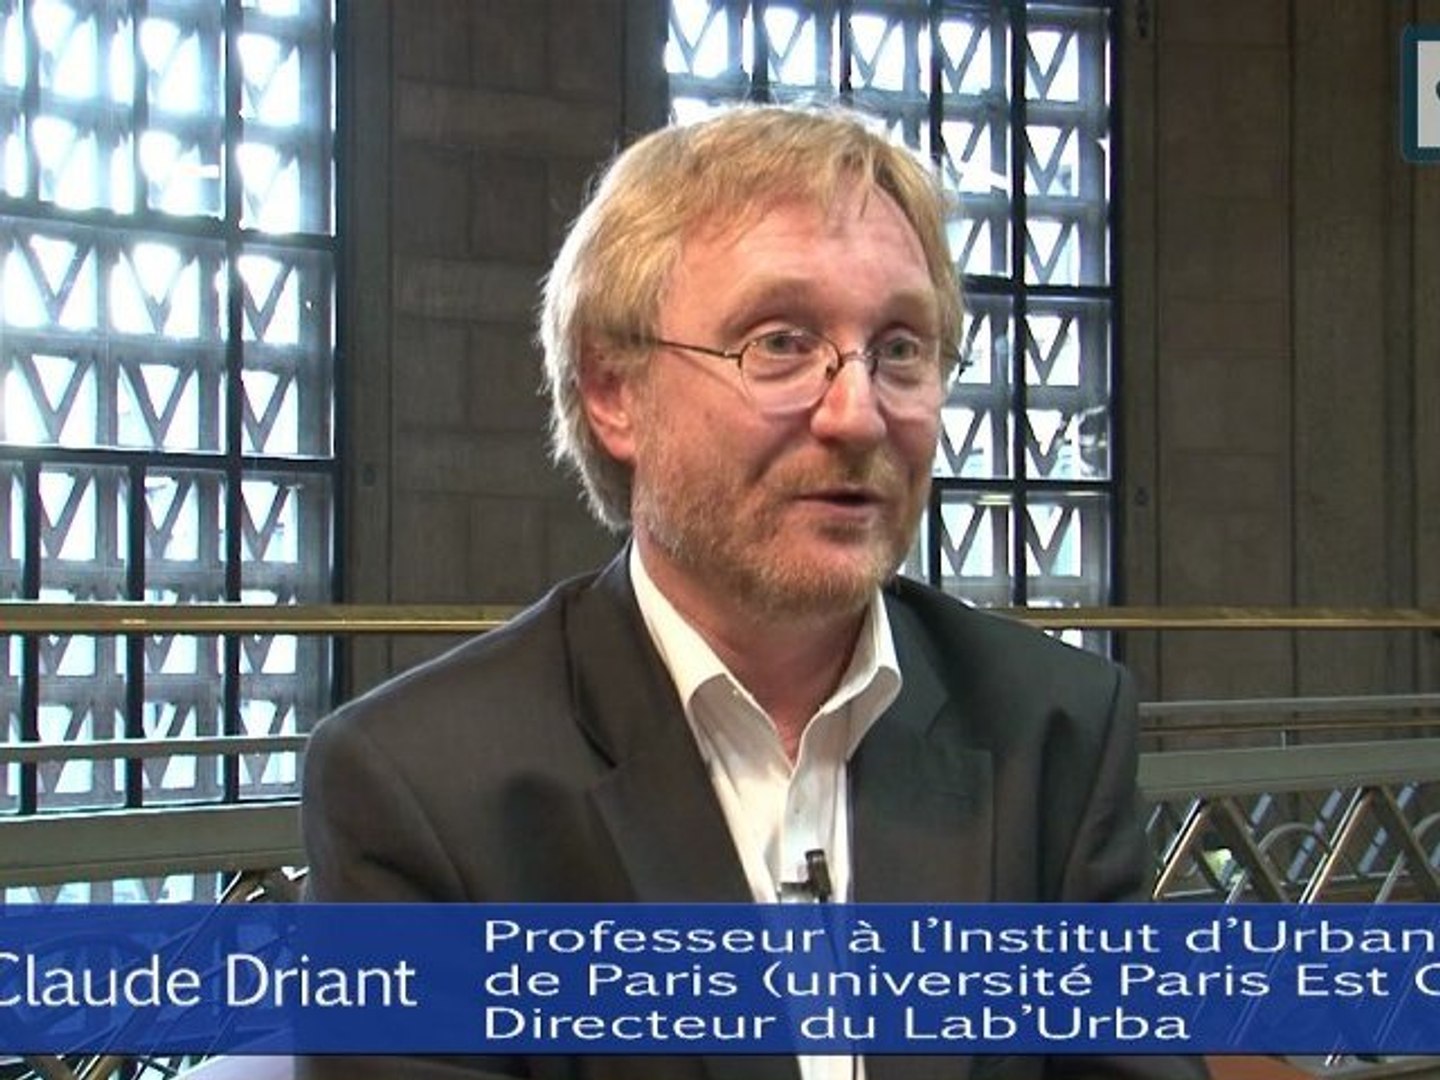 Questions à Jean-Claude Driant - cese - Vidéo Dailymotion